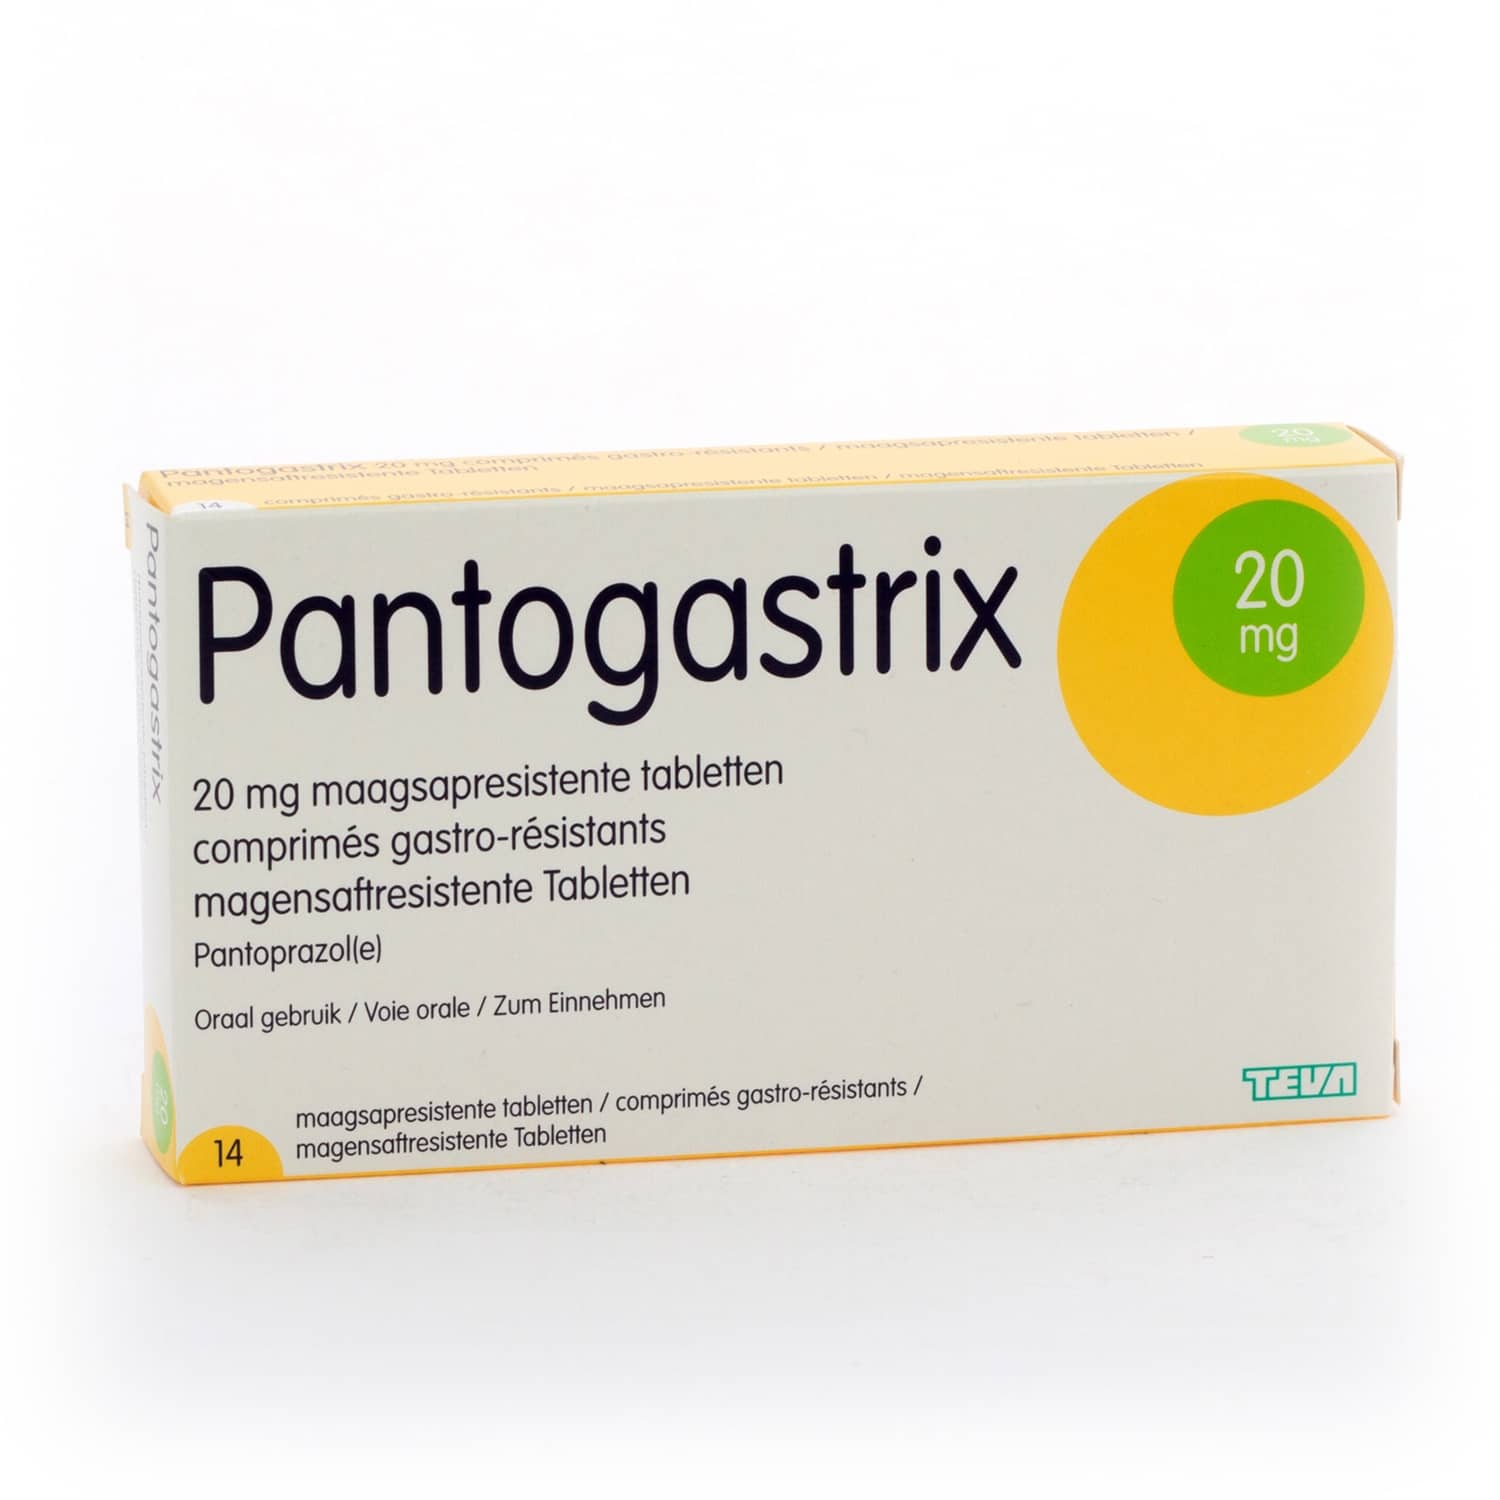 Pantogastrix 20 mg